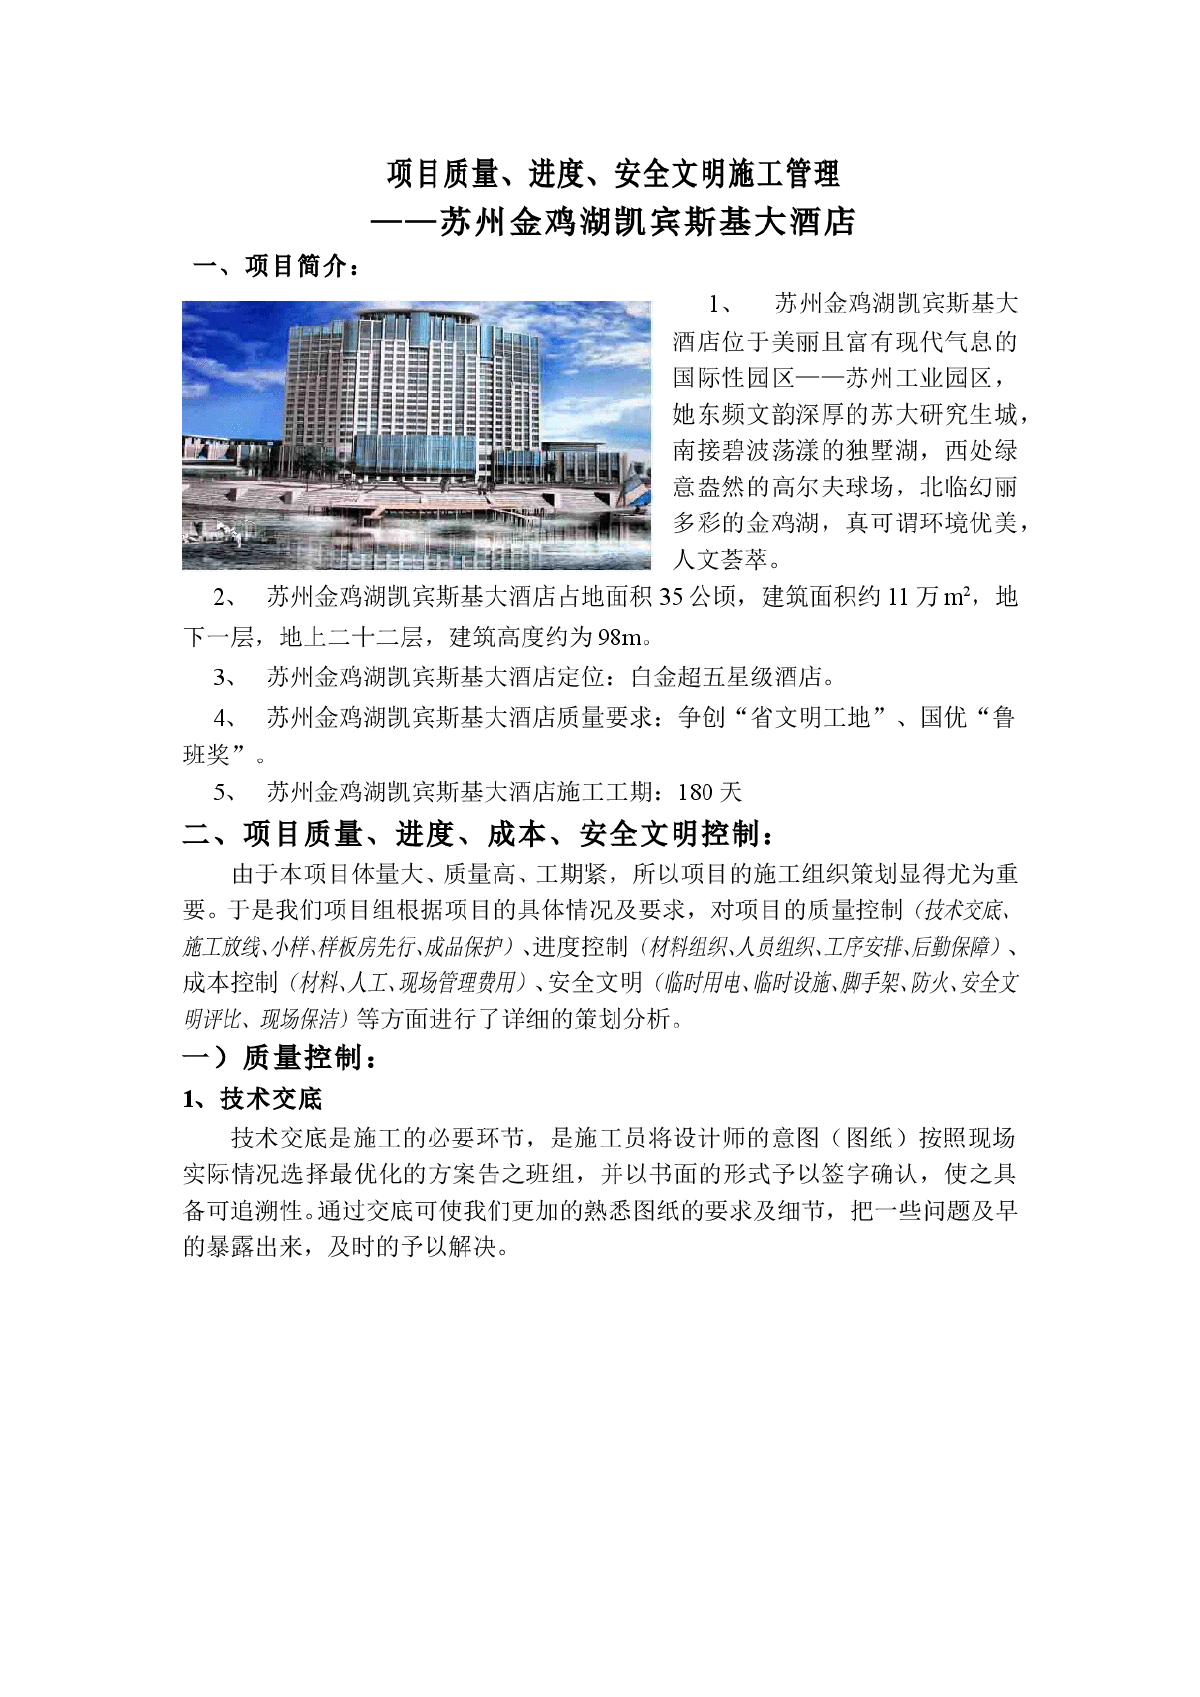 【苏州】凯宾斯基大酒店项目质量、安全文明施工管理